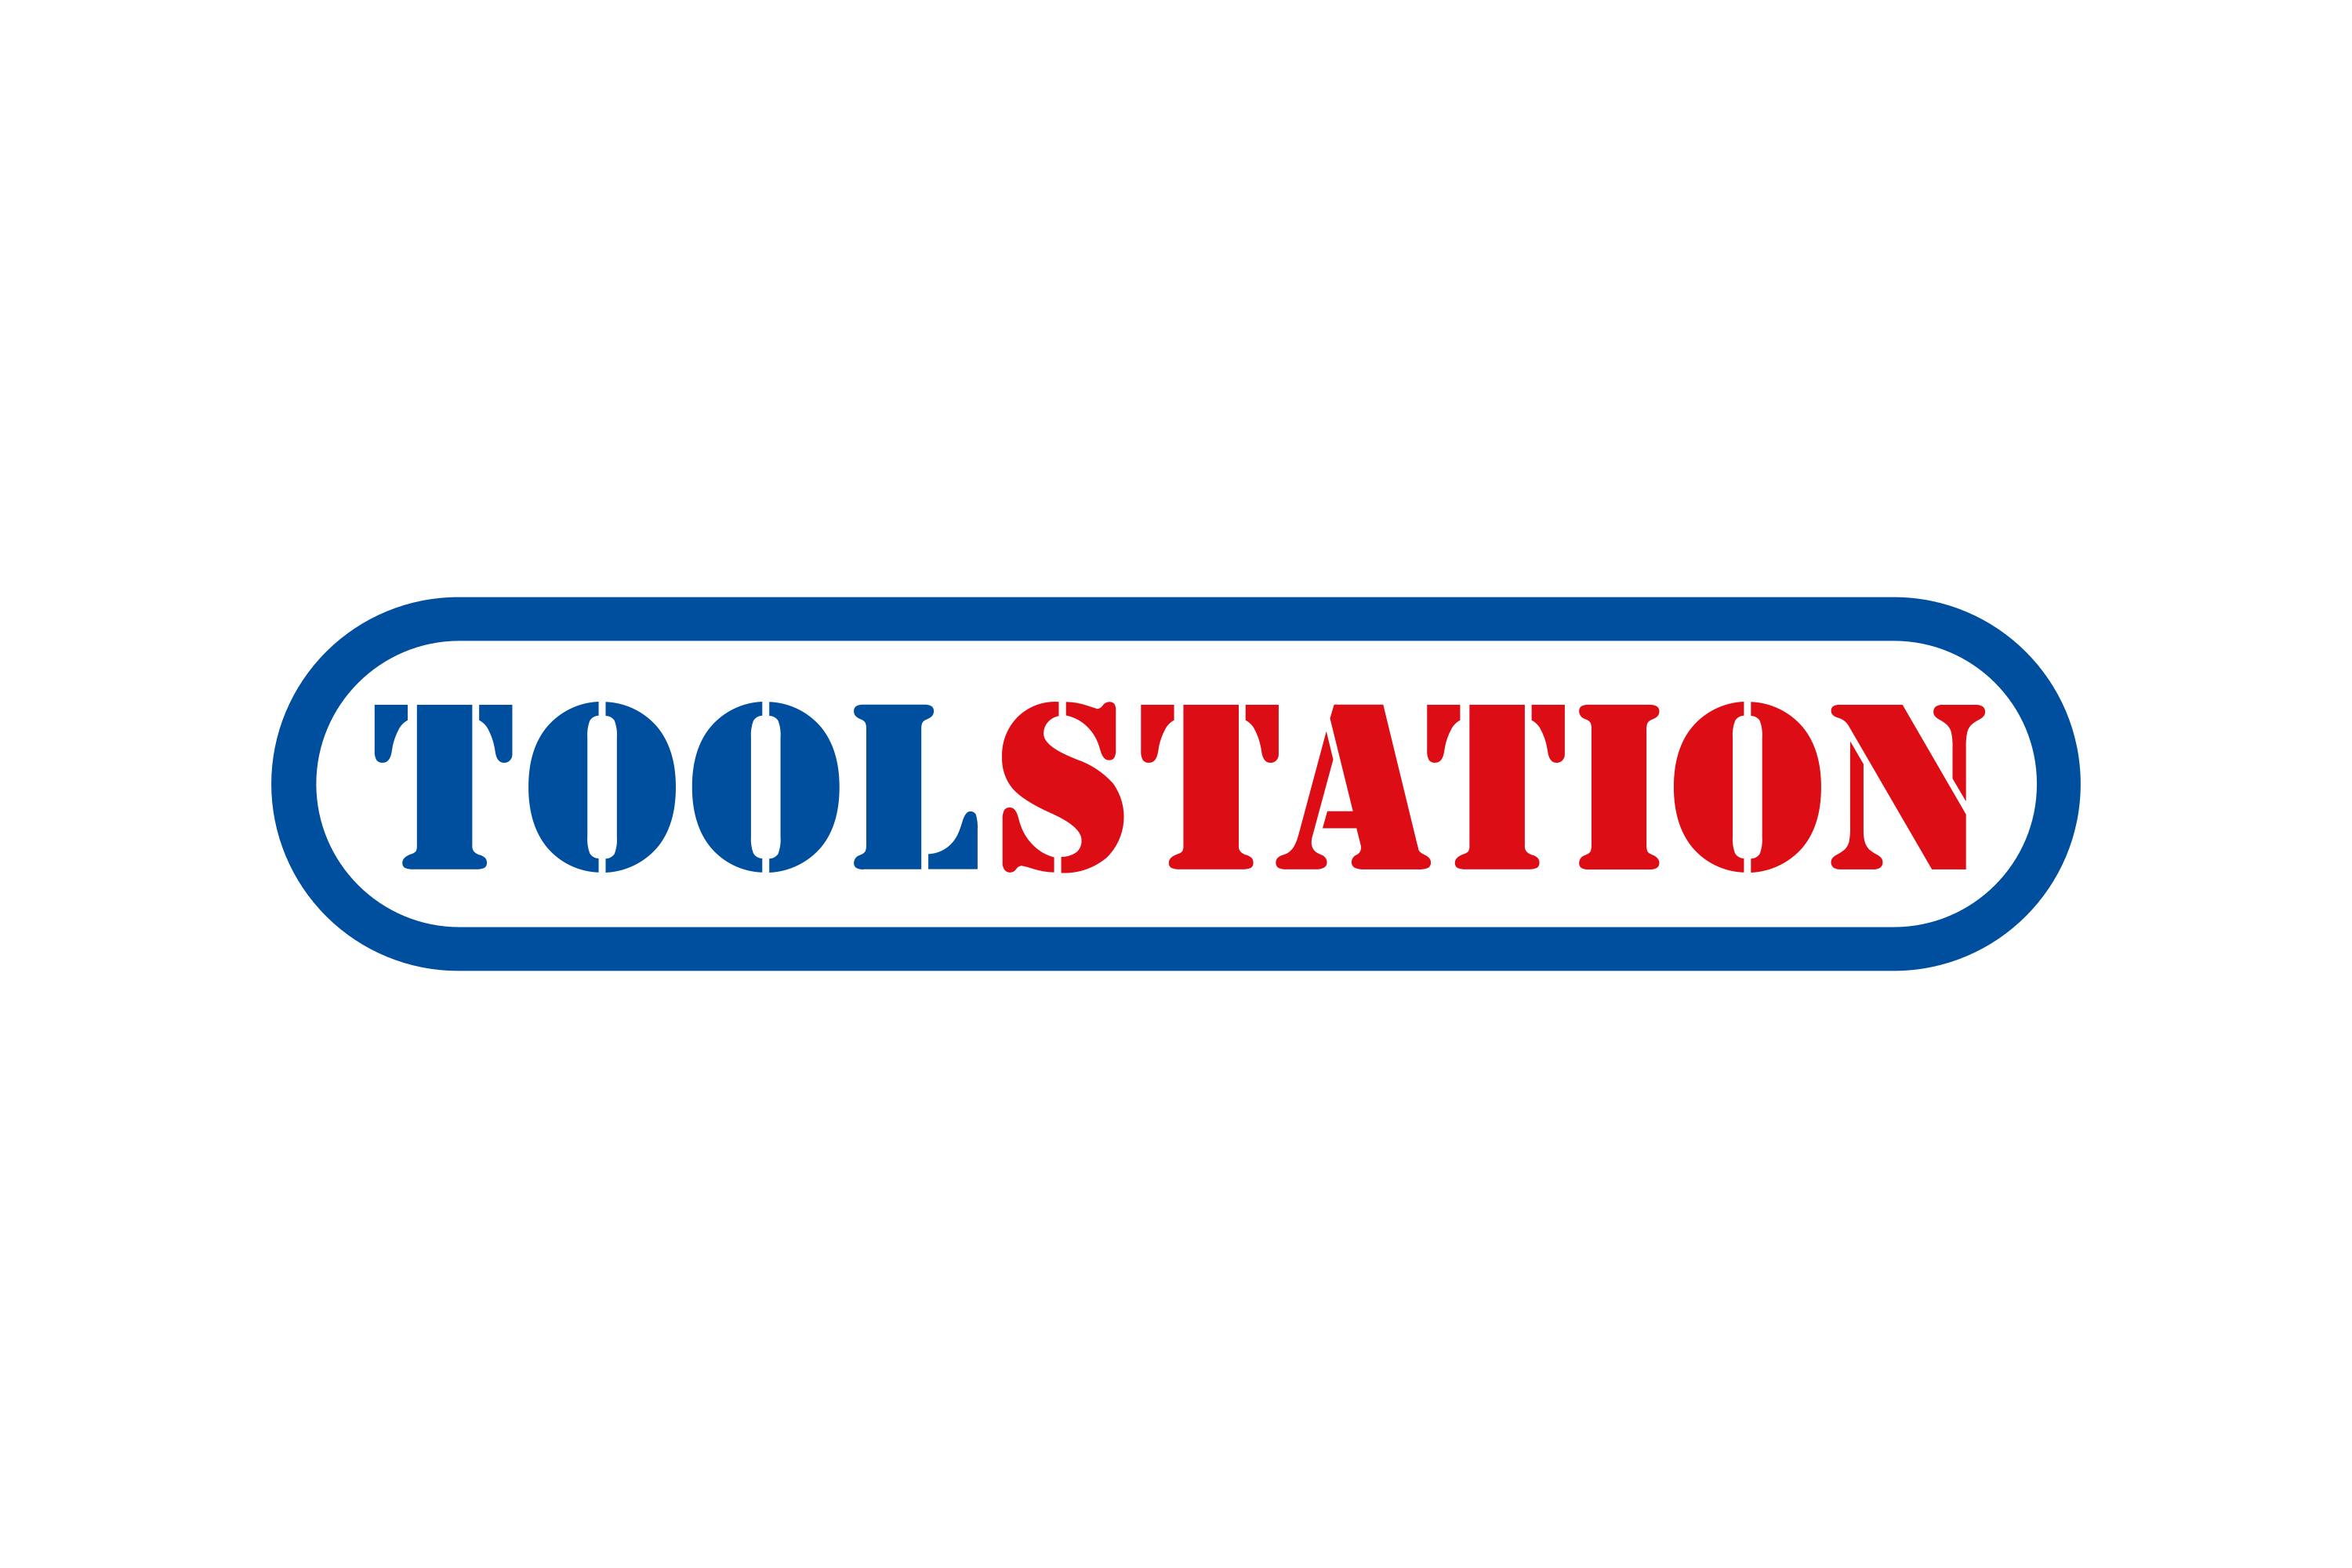 Download Toolstation Logo in SVG Vector or PNG File Format - Logo.wine